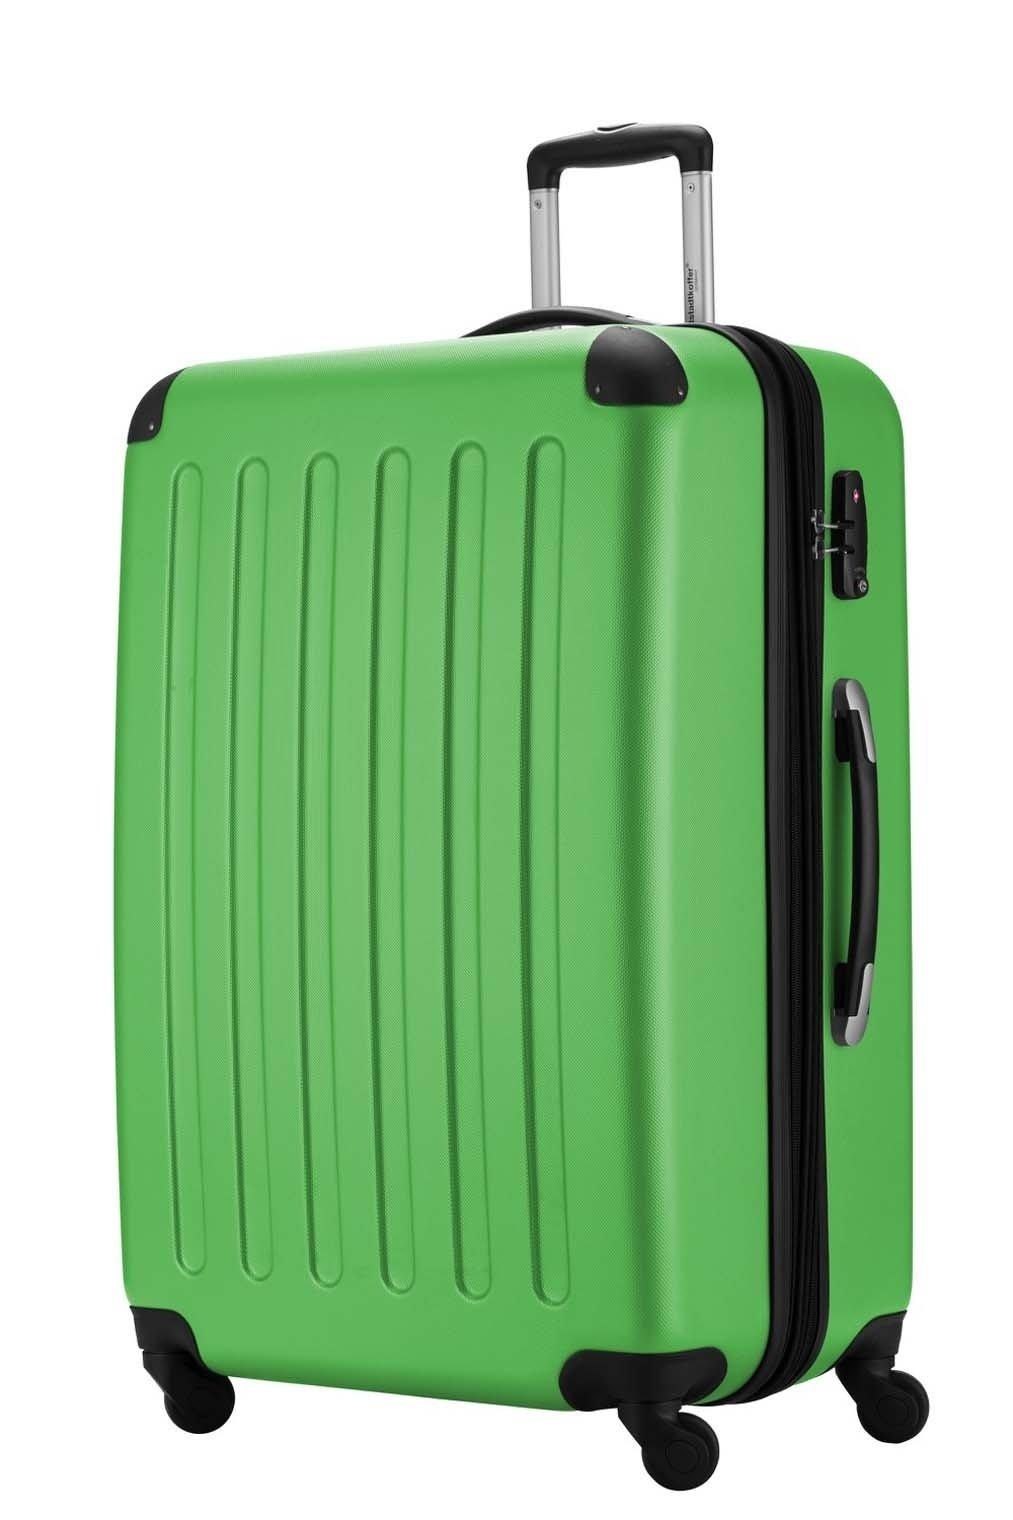 Hauptstadtkoffer ONE SIZE, Spree Valise rigide avec TSA surface mate vert pomme  